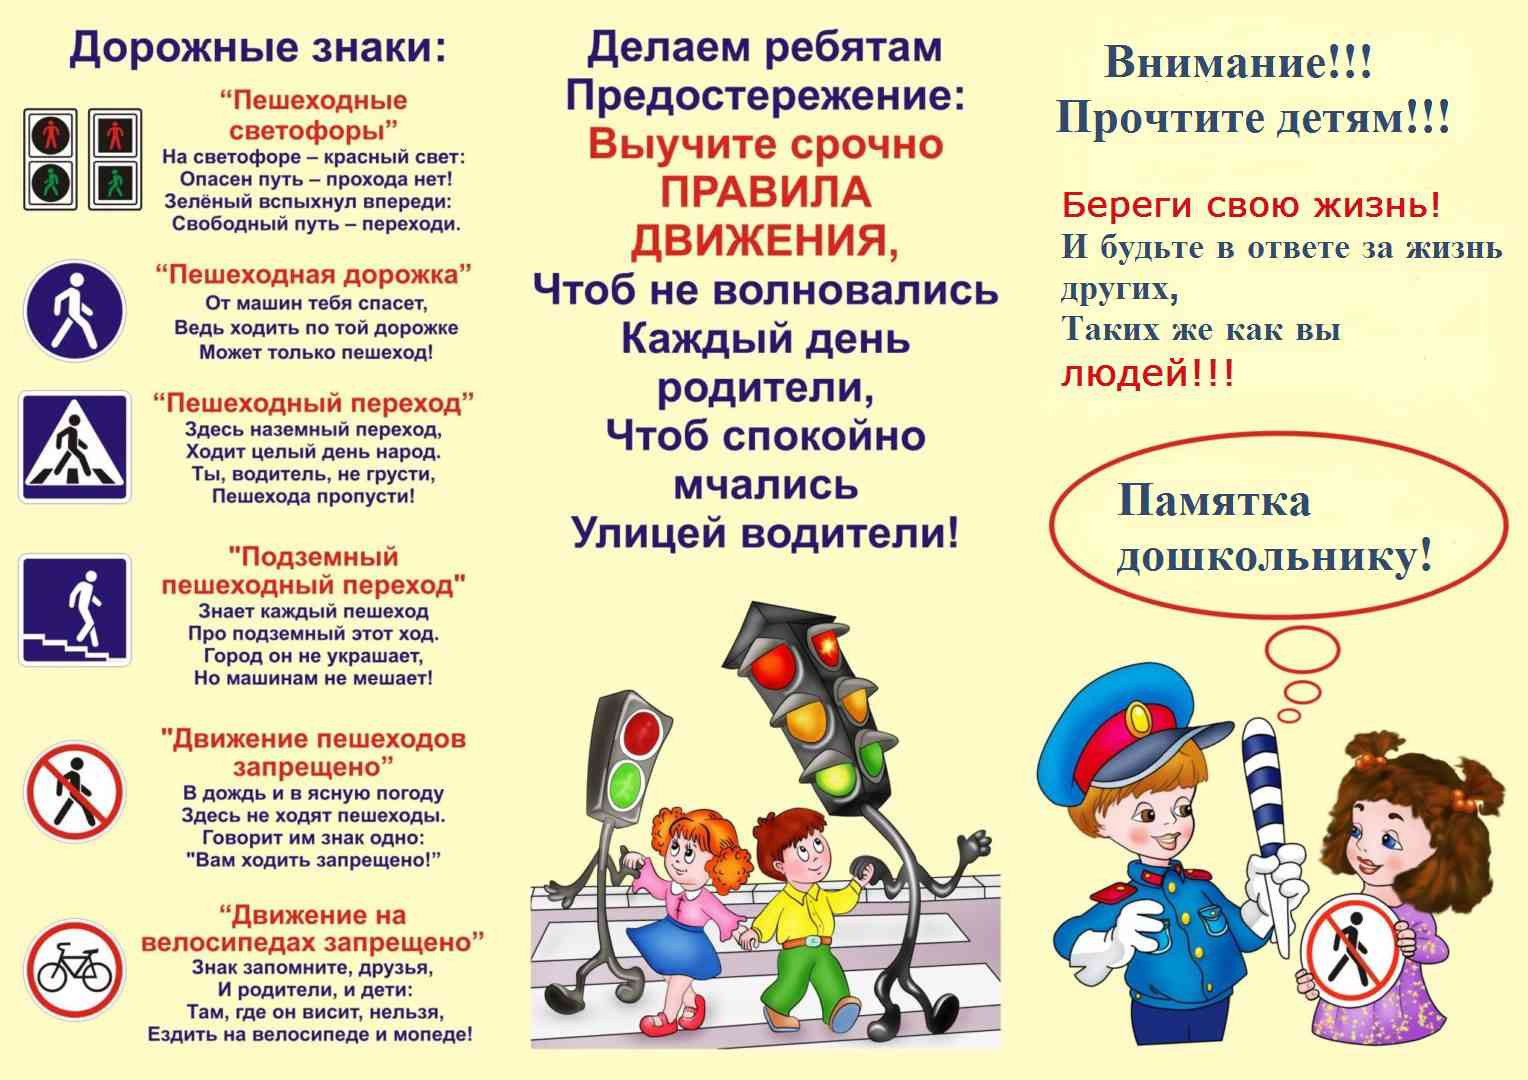 Электронное образование Республики Татарстан